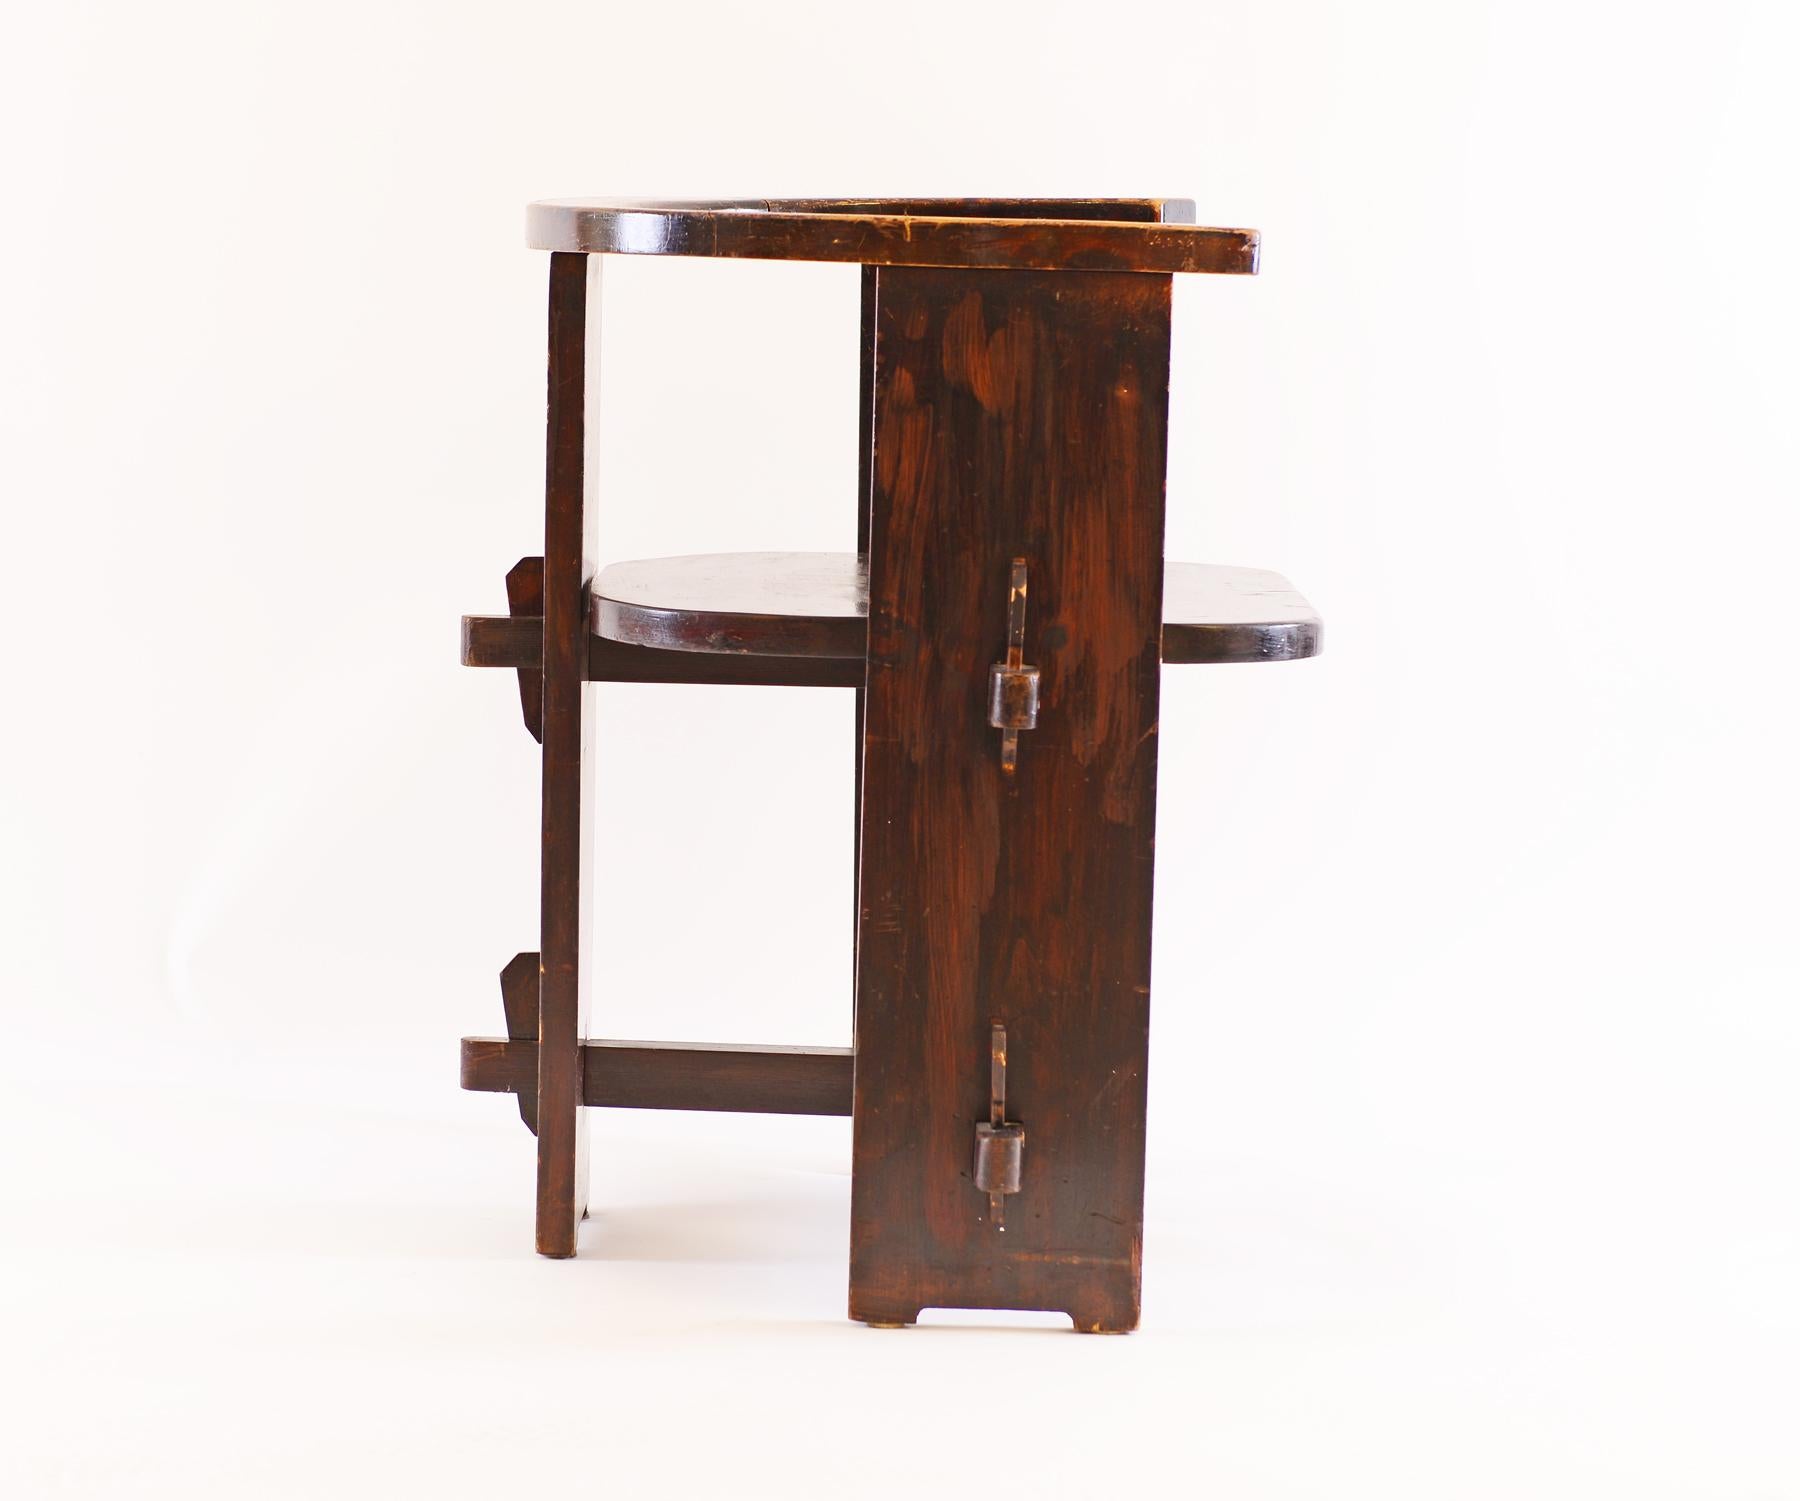 Très rare chaise du début du 20ème siècle, école Josef Hoffmann, très influencée par le mouvement Arts and Crafts, bois de hêtre teinté et verni - Original.
 